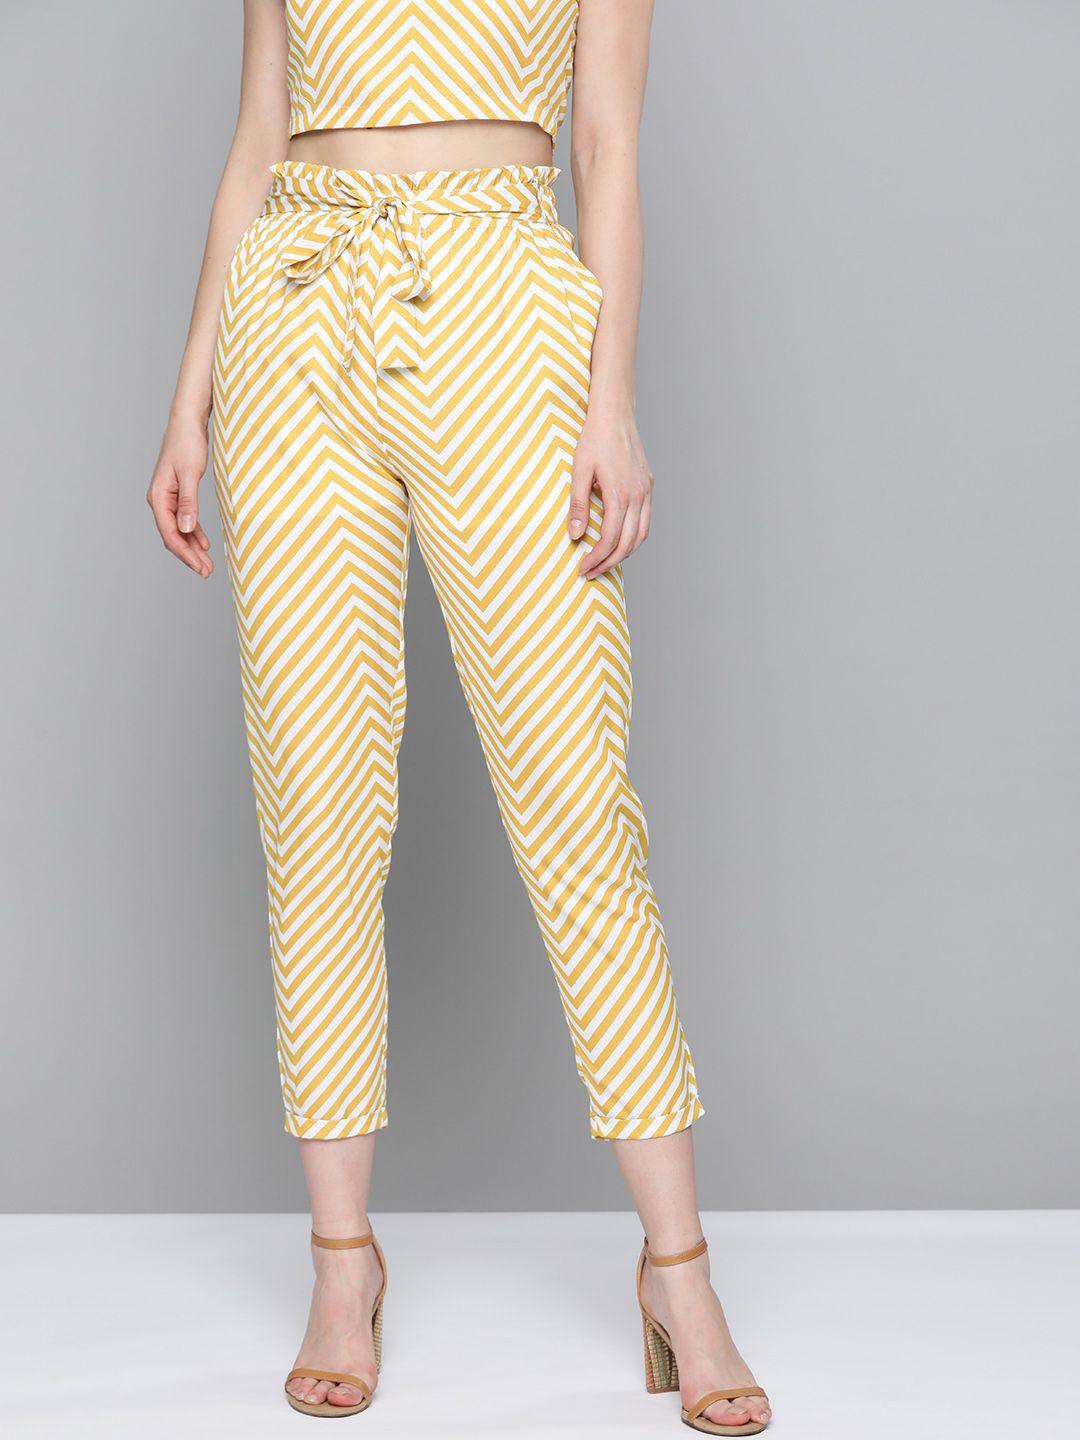 sassafras mustard yellow & white chevron tapered belted trousers